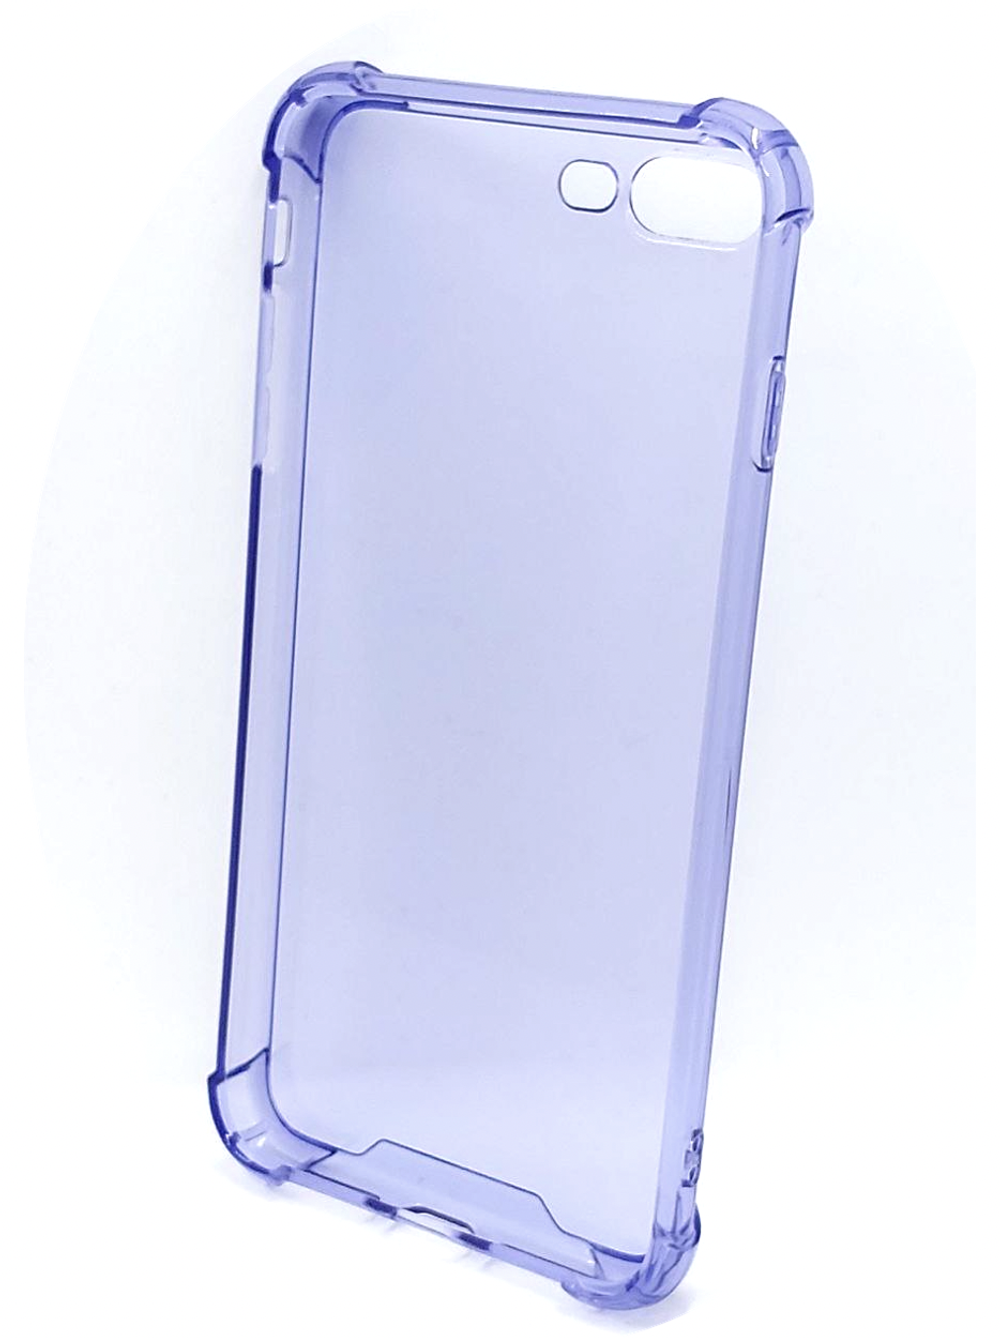 Чехол на iPhone 7 Plus / 8 Plus / айфон, противоударный, с кольцом, подставкой, прозрачный